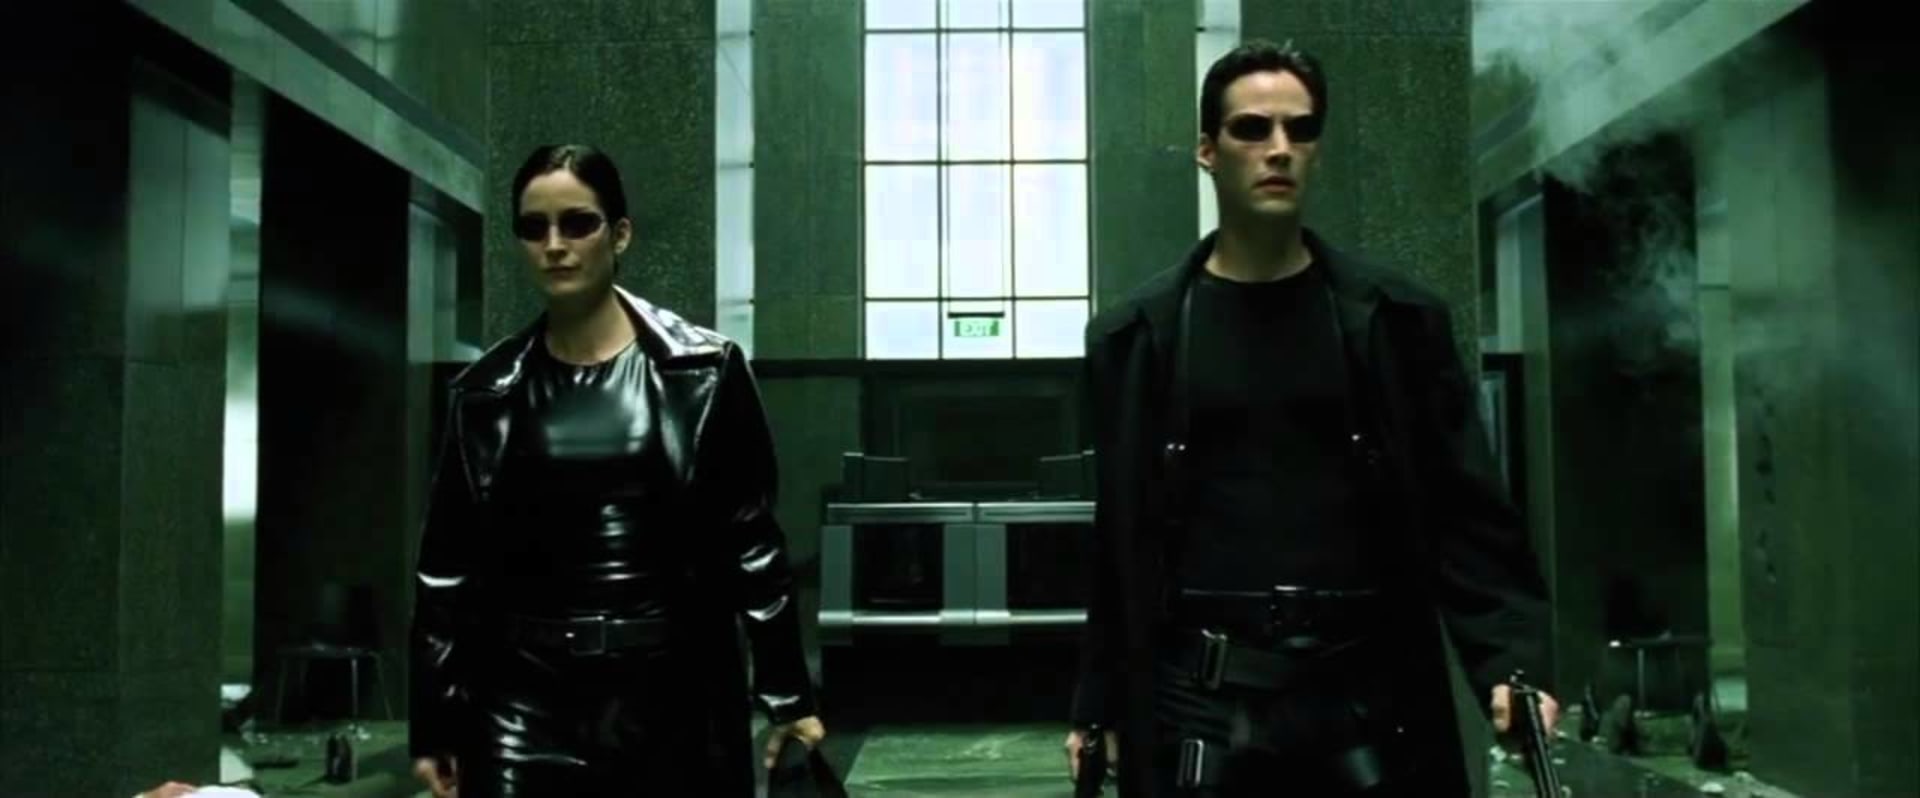 Matrix je dodnes jedním z nejoblíbenějších sci-fi filmů.